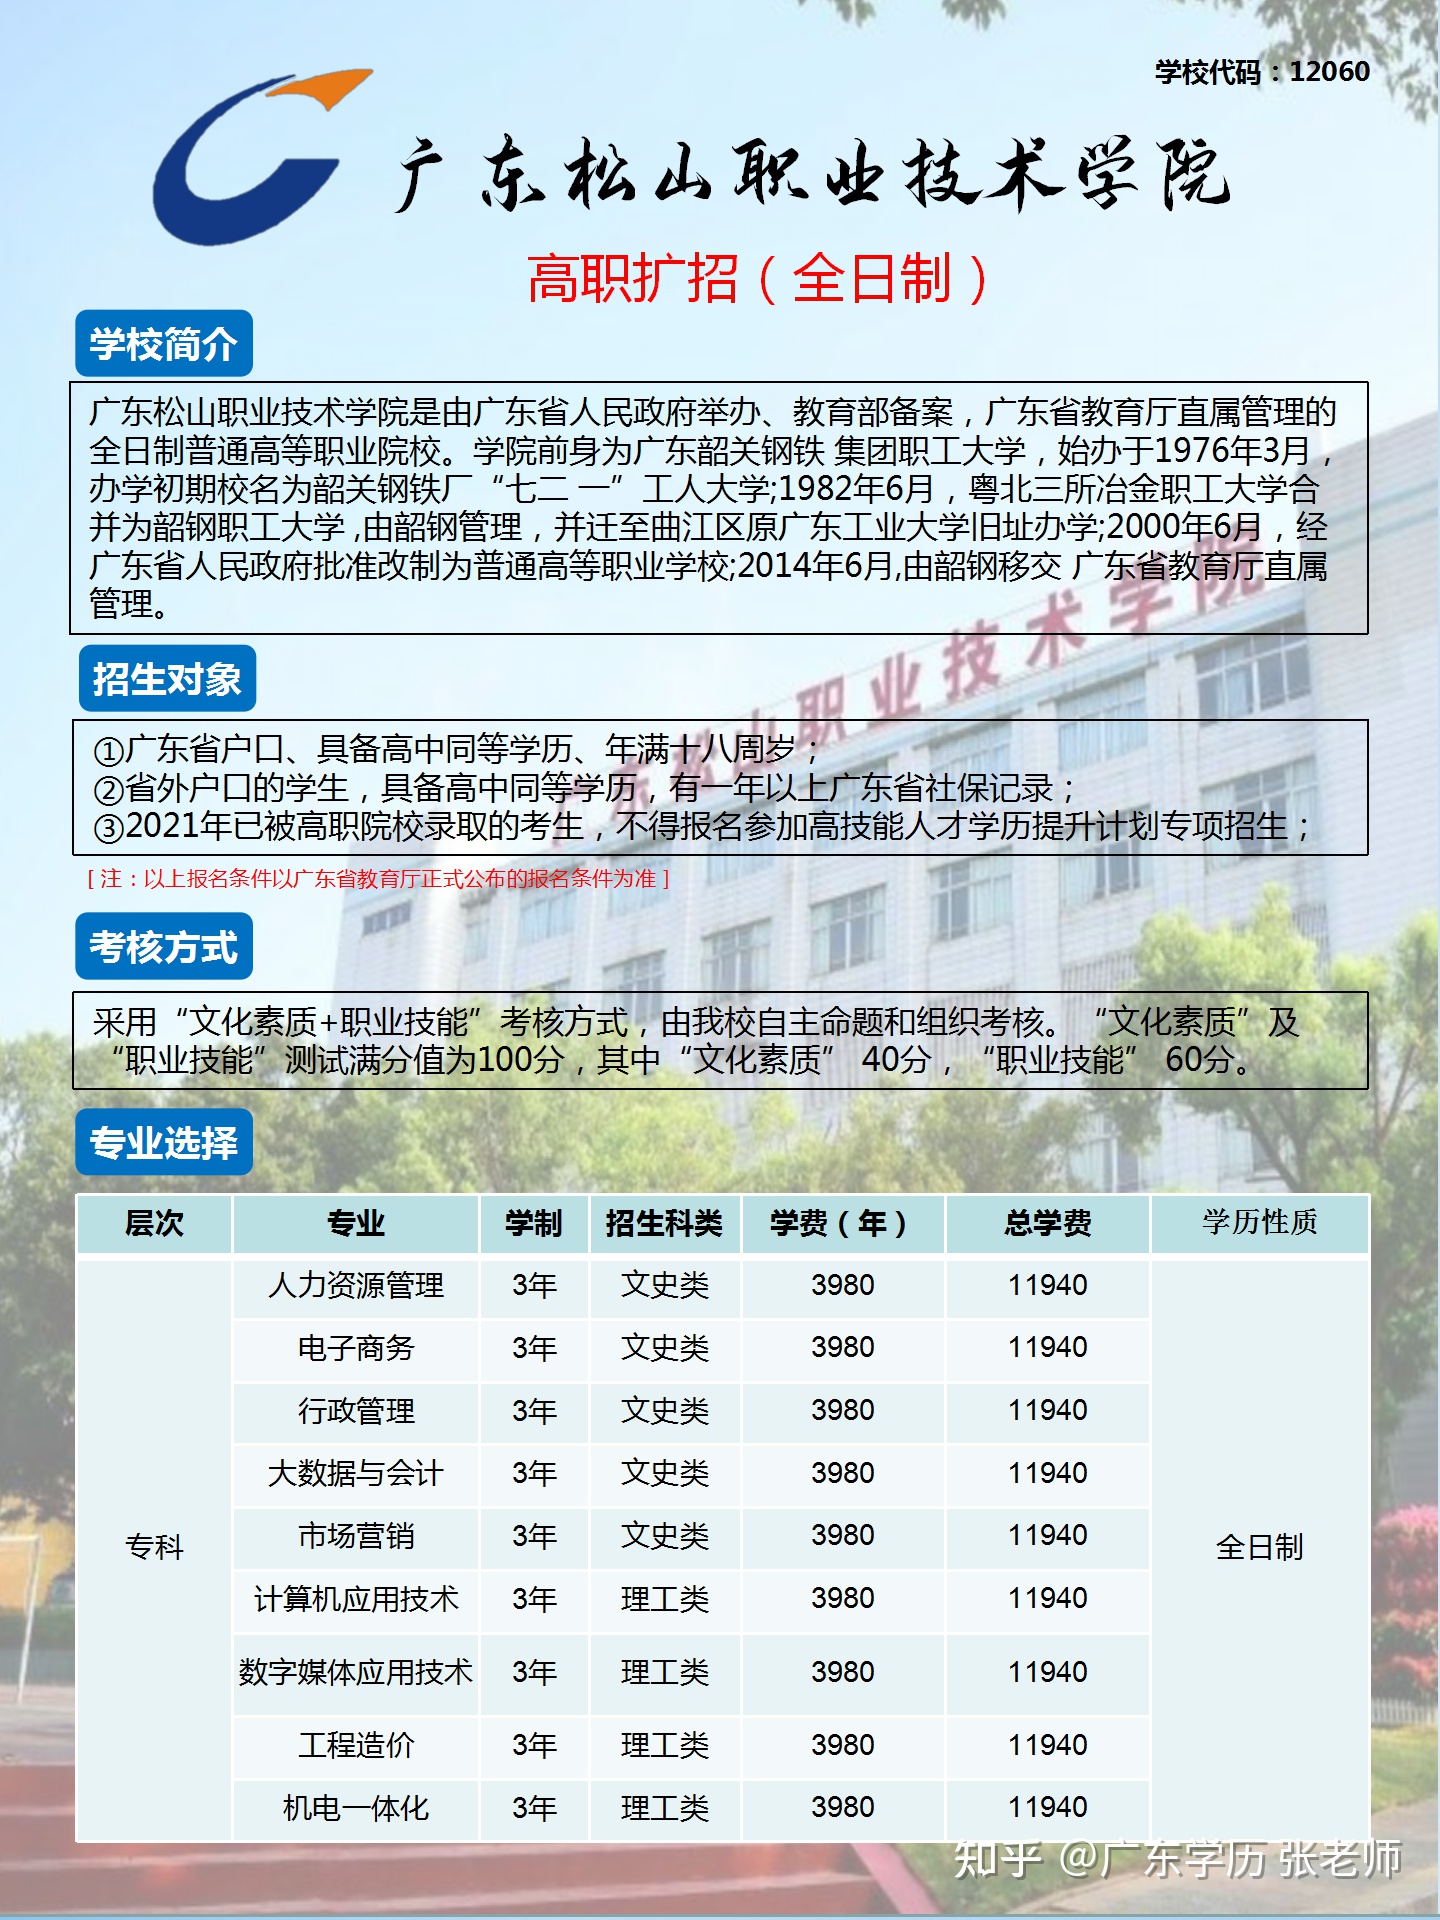 广东省有哪些专科院校,广东轻工职业技术学院